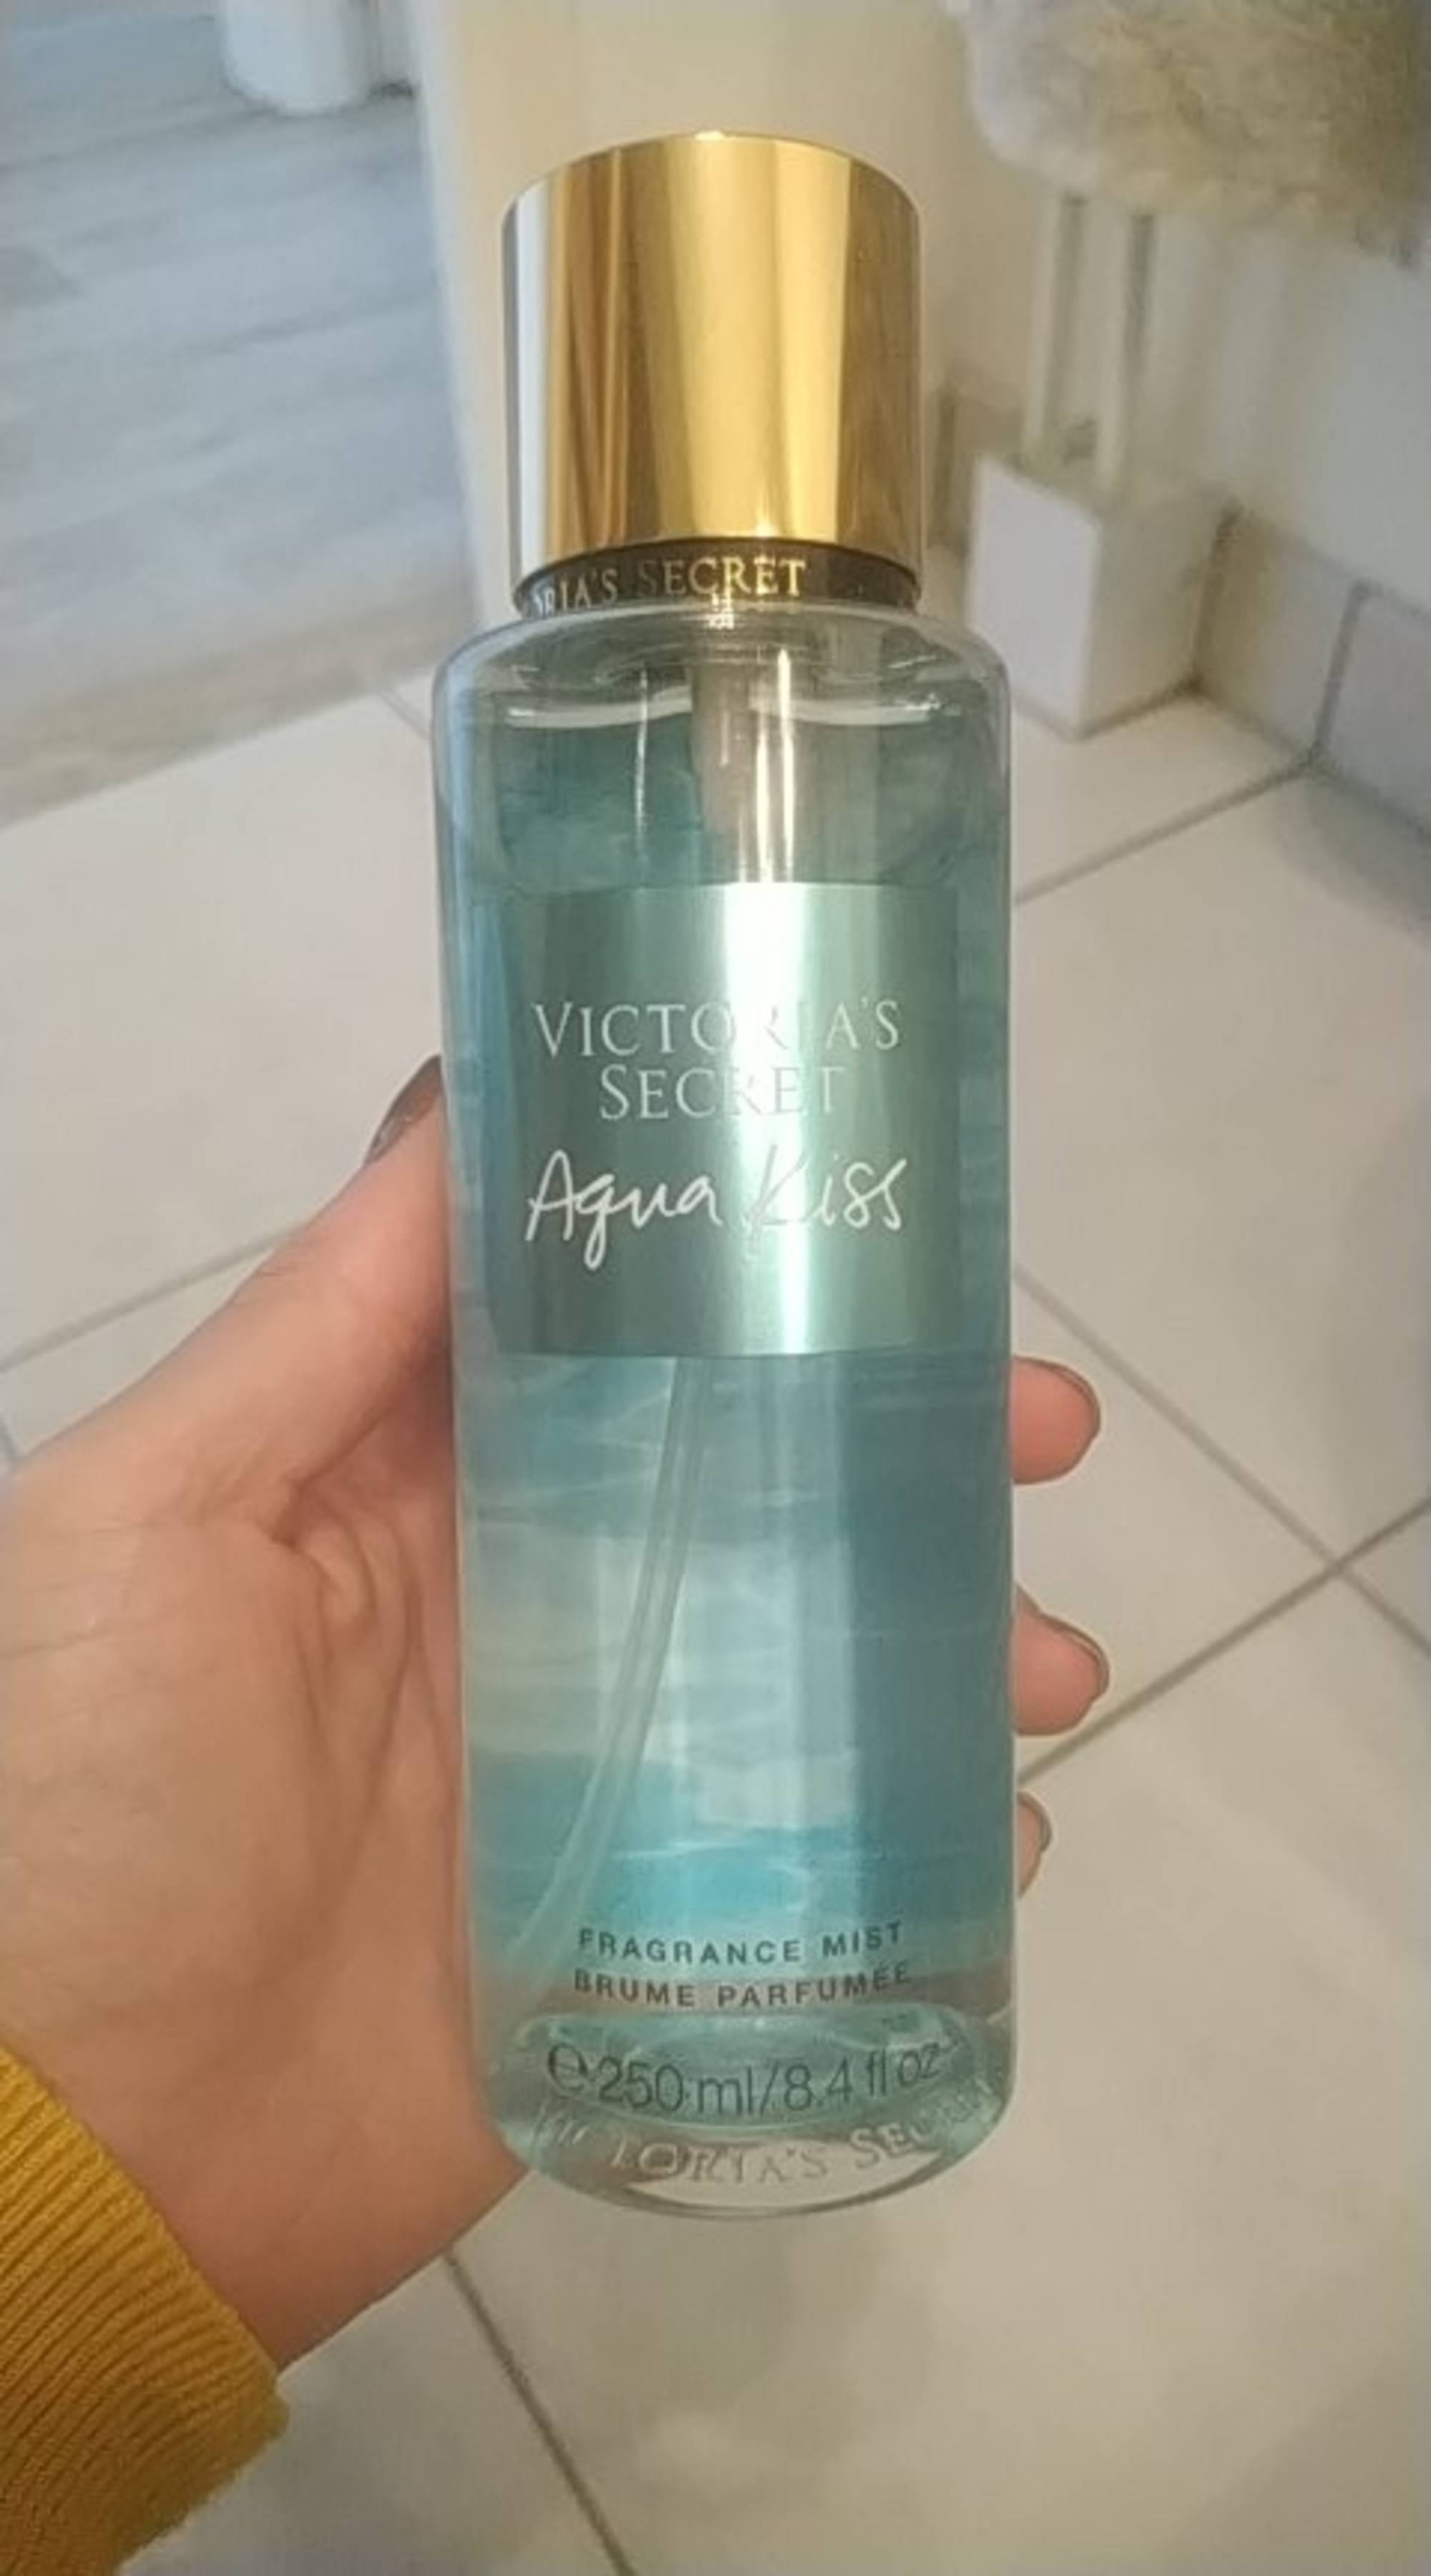 VICTORIA'S SECRET - Aqua kiss - Brume parfumée